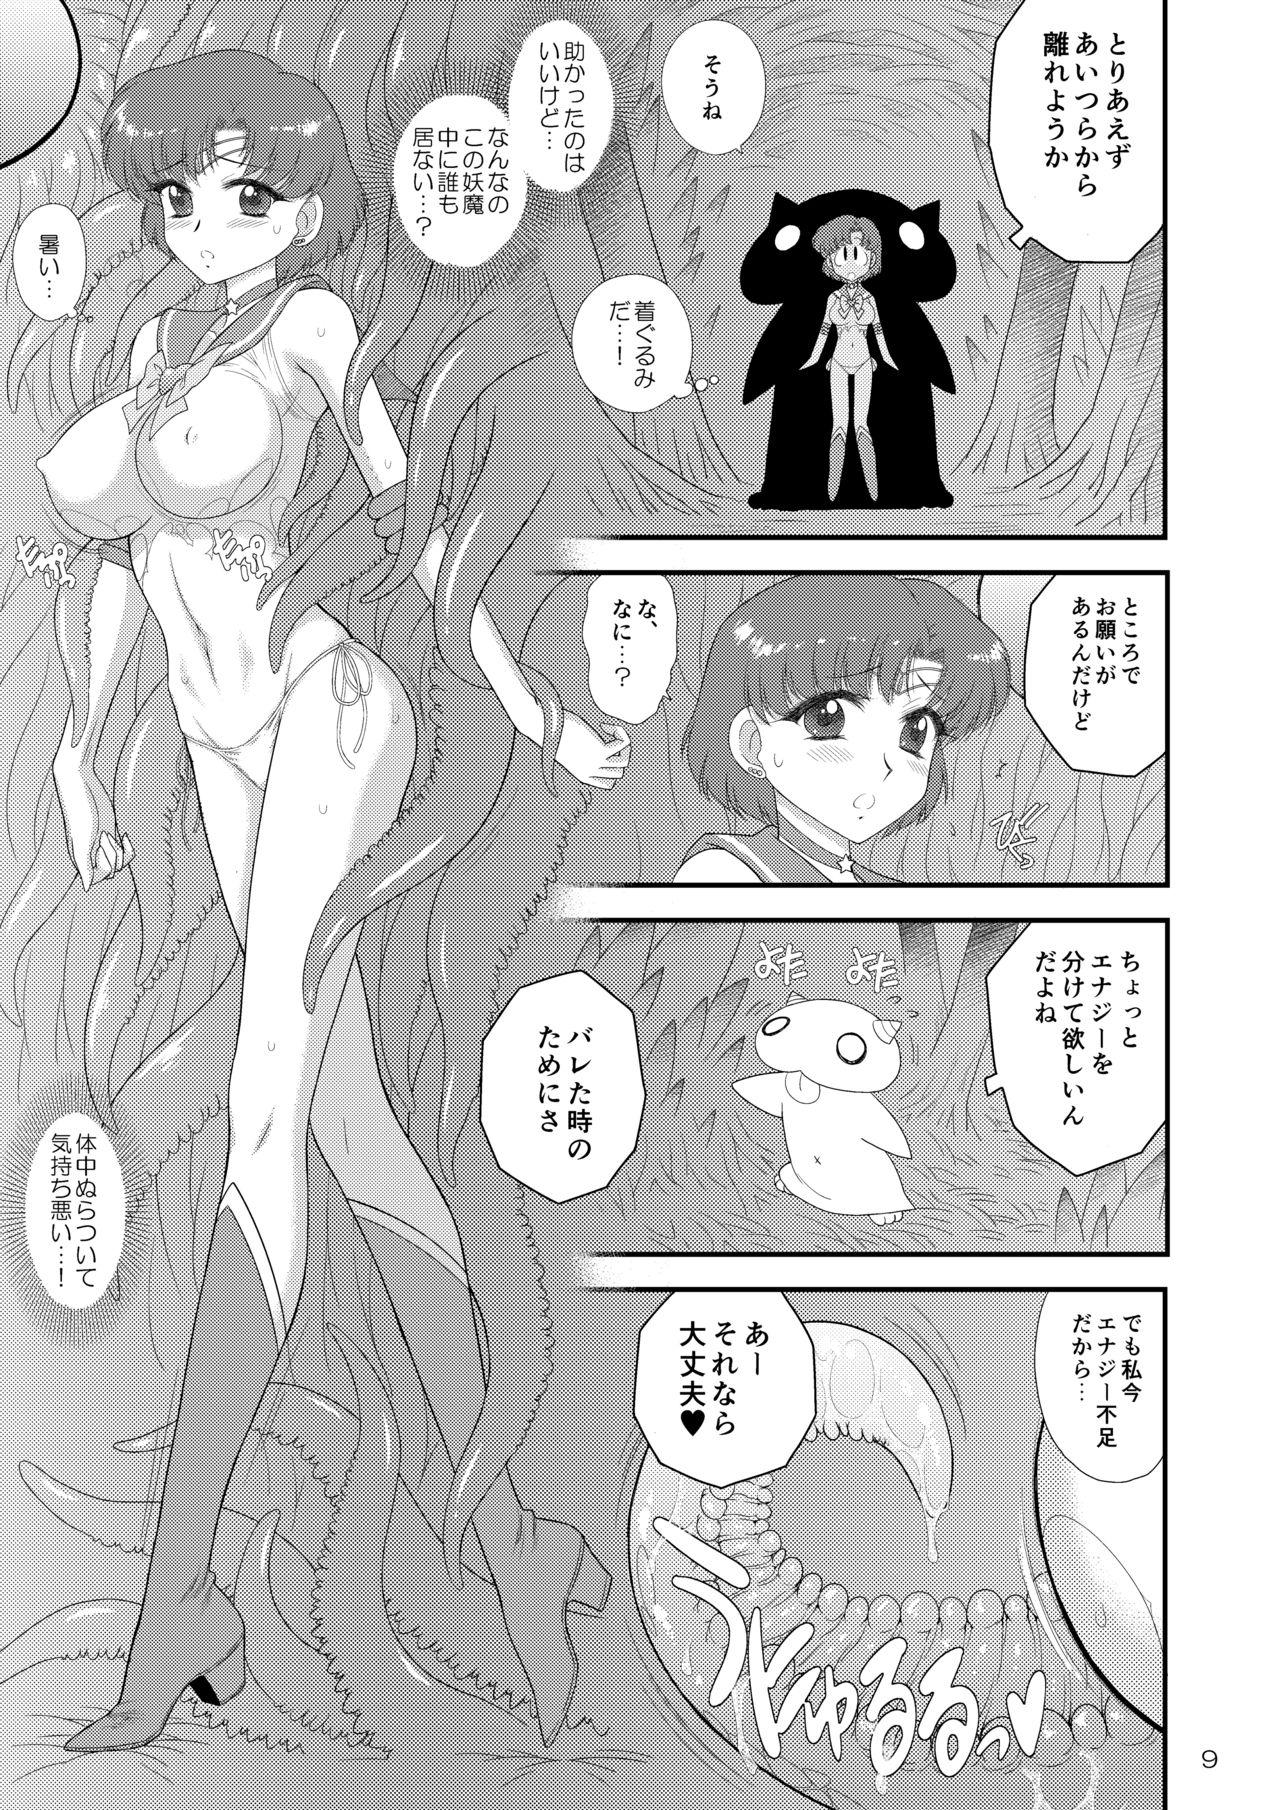 Staxxx Kigurumi no Naka wa Massakari - Sailor moon Hunk - Page 9